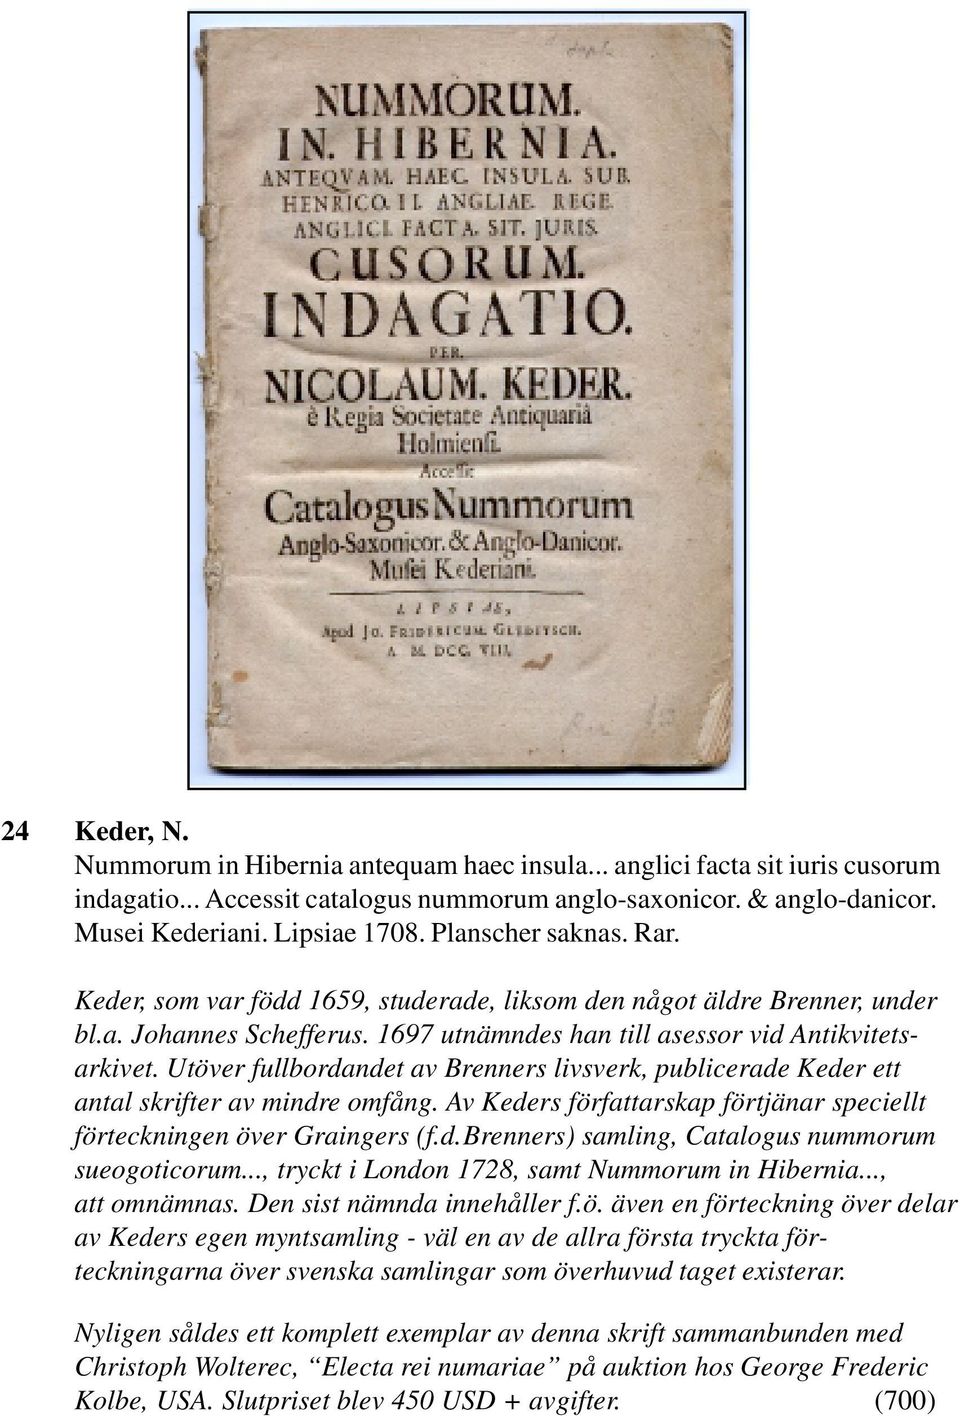 Utöver fullbordandet av Brenners livsverk, publicerade Keder ett antal skrifter av mindre omfång. Av Keders författarskap förtjänar speciellt förteckningen över Graingers (f.d.brenners) samling, Catalogus nummorum sueogoticorum.